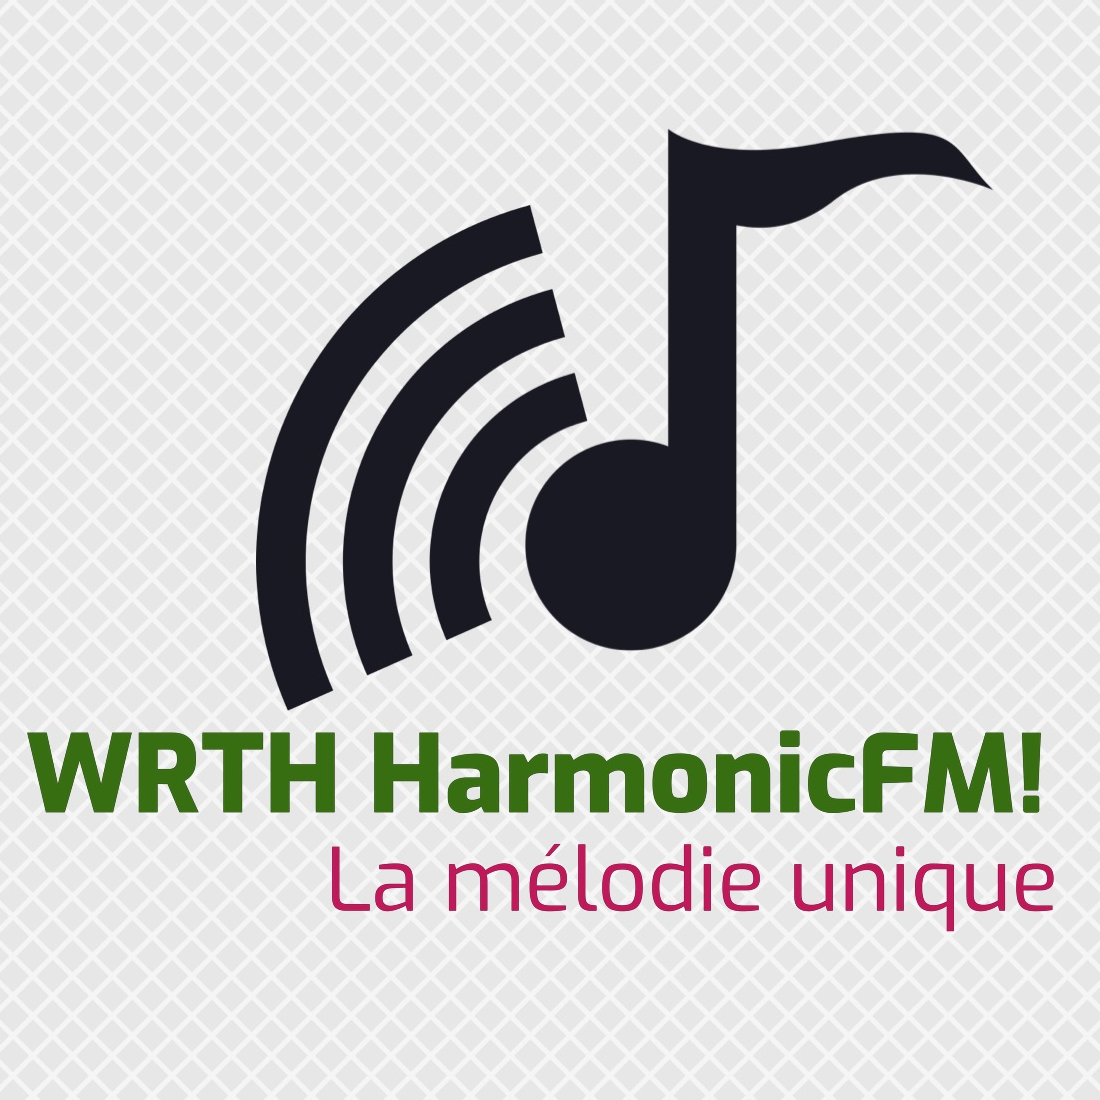 Radio HarmonicFM!